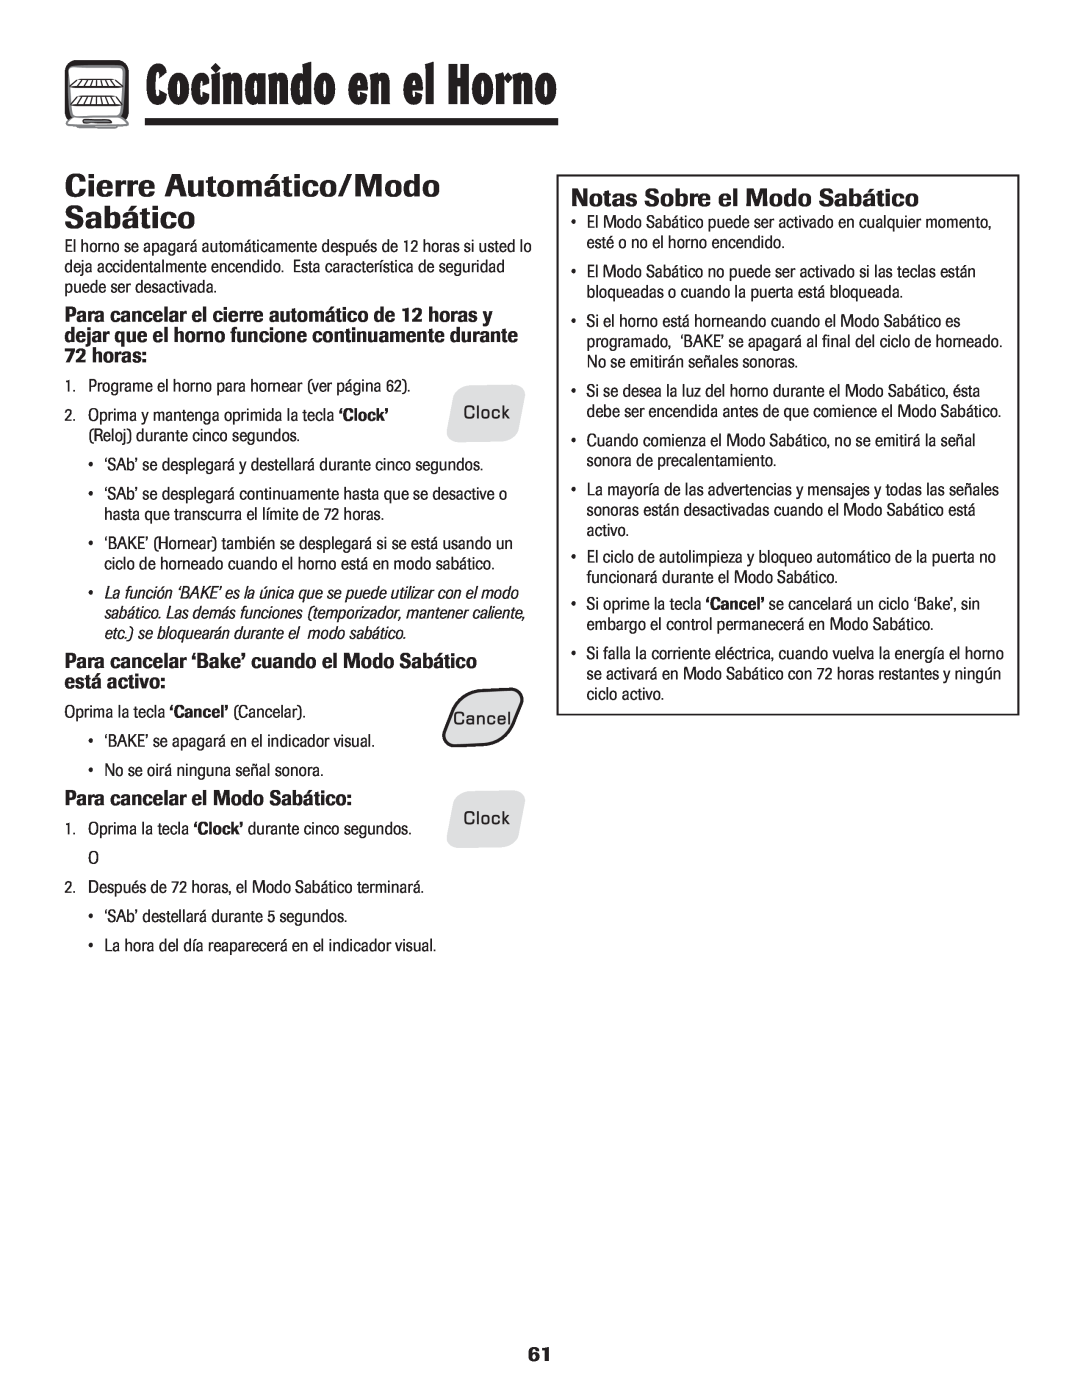 Amana 500 manual Cierre Automático/Modo Sabático, Notas Sobre el Modo Sabático, horas, Para cancelar el Modo Sabático 